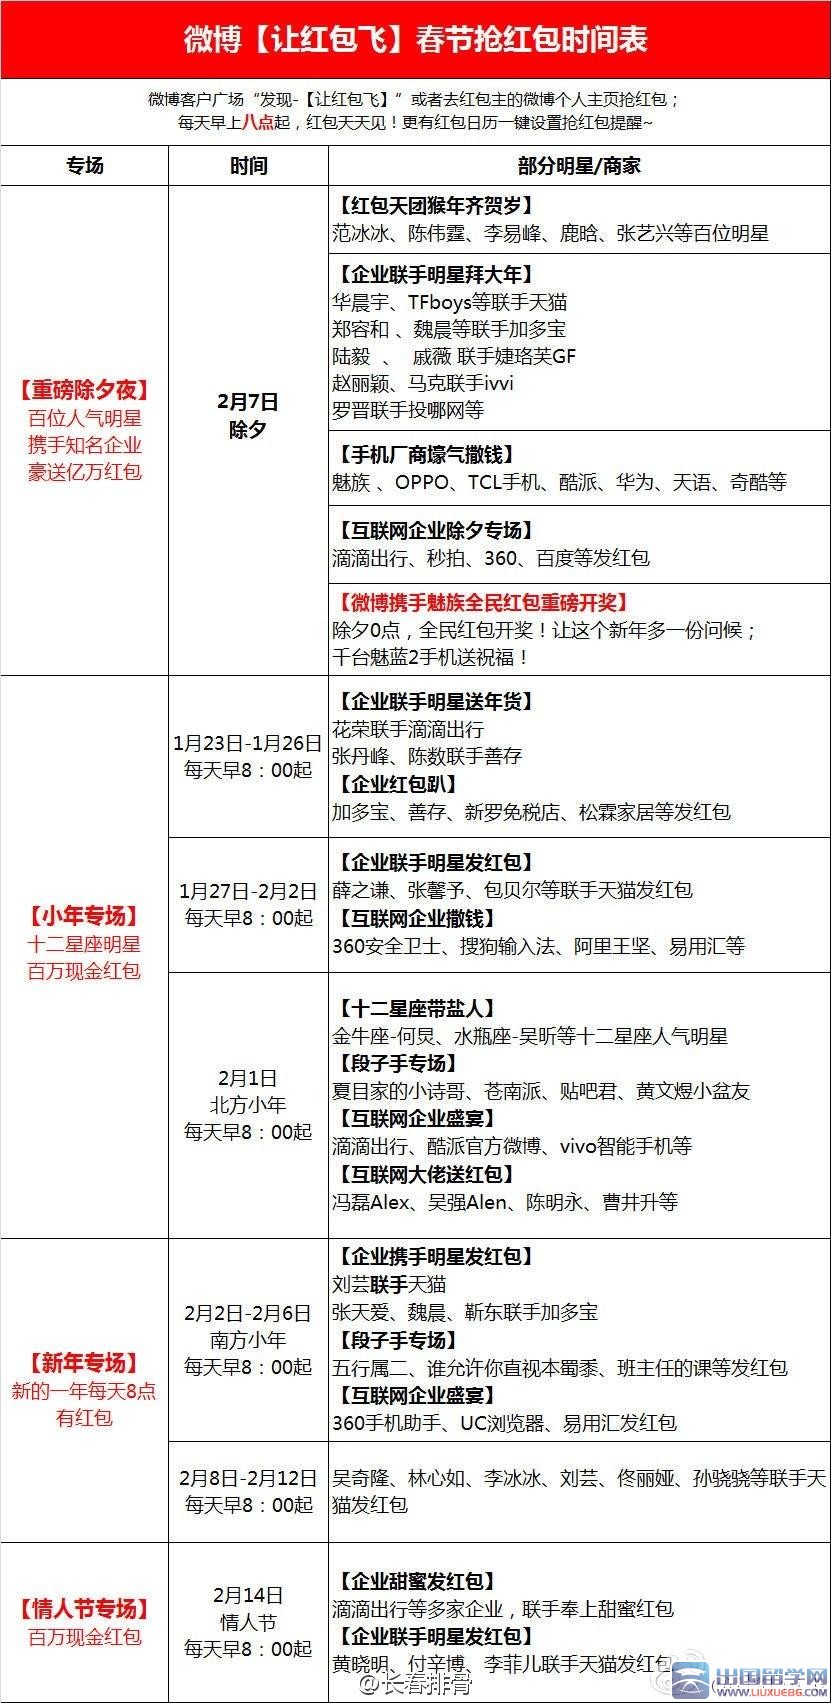 2016微博春节抢红包时间表